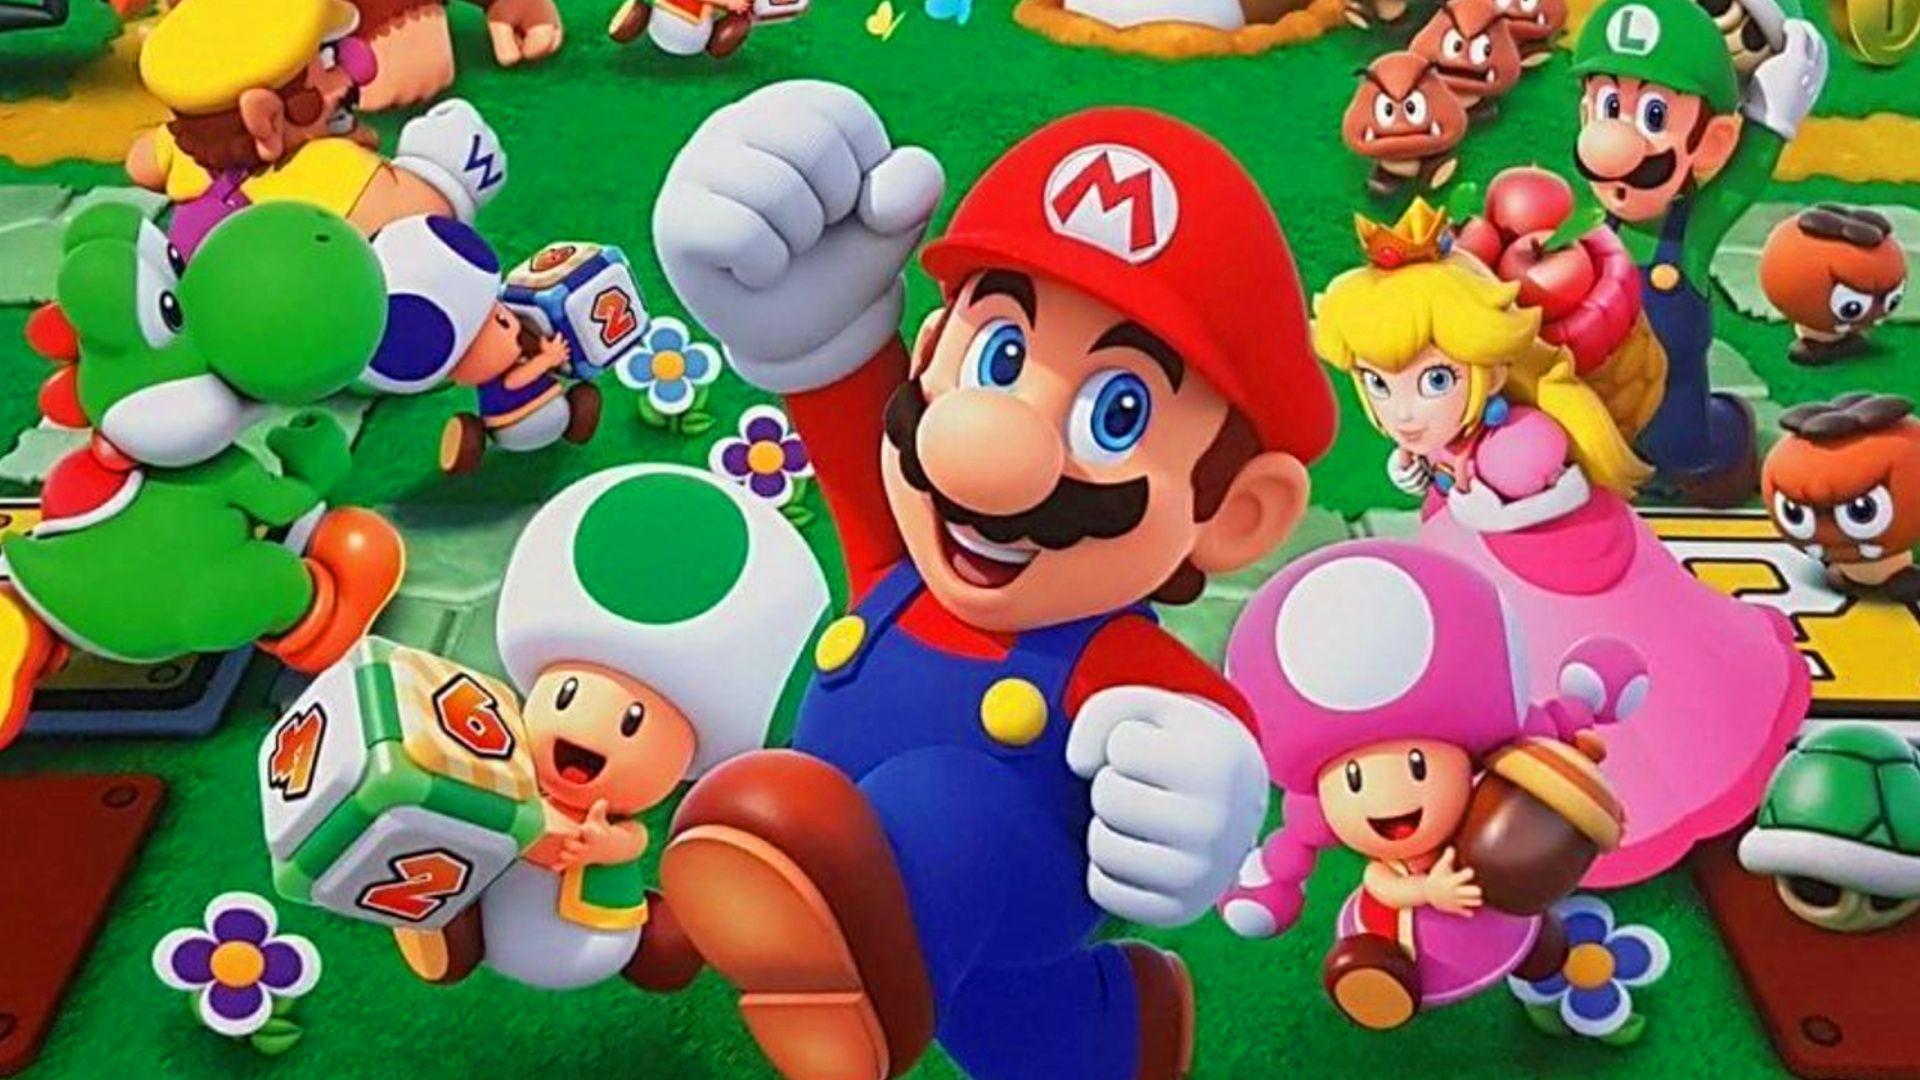 Музыка из игр mario. Nintendo Switch Марио пати. Nintendo Wii u Mario Party 10. Nintendo 3ds Mario Party. Mario Party: Star Rush [3ds].